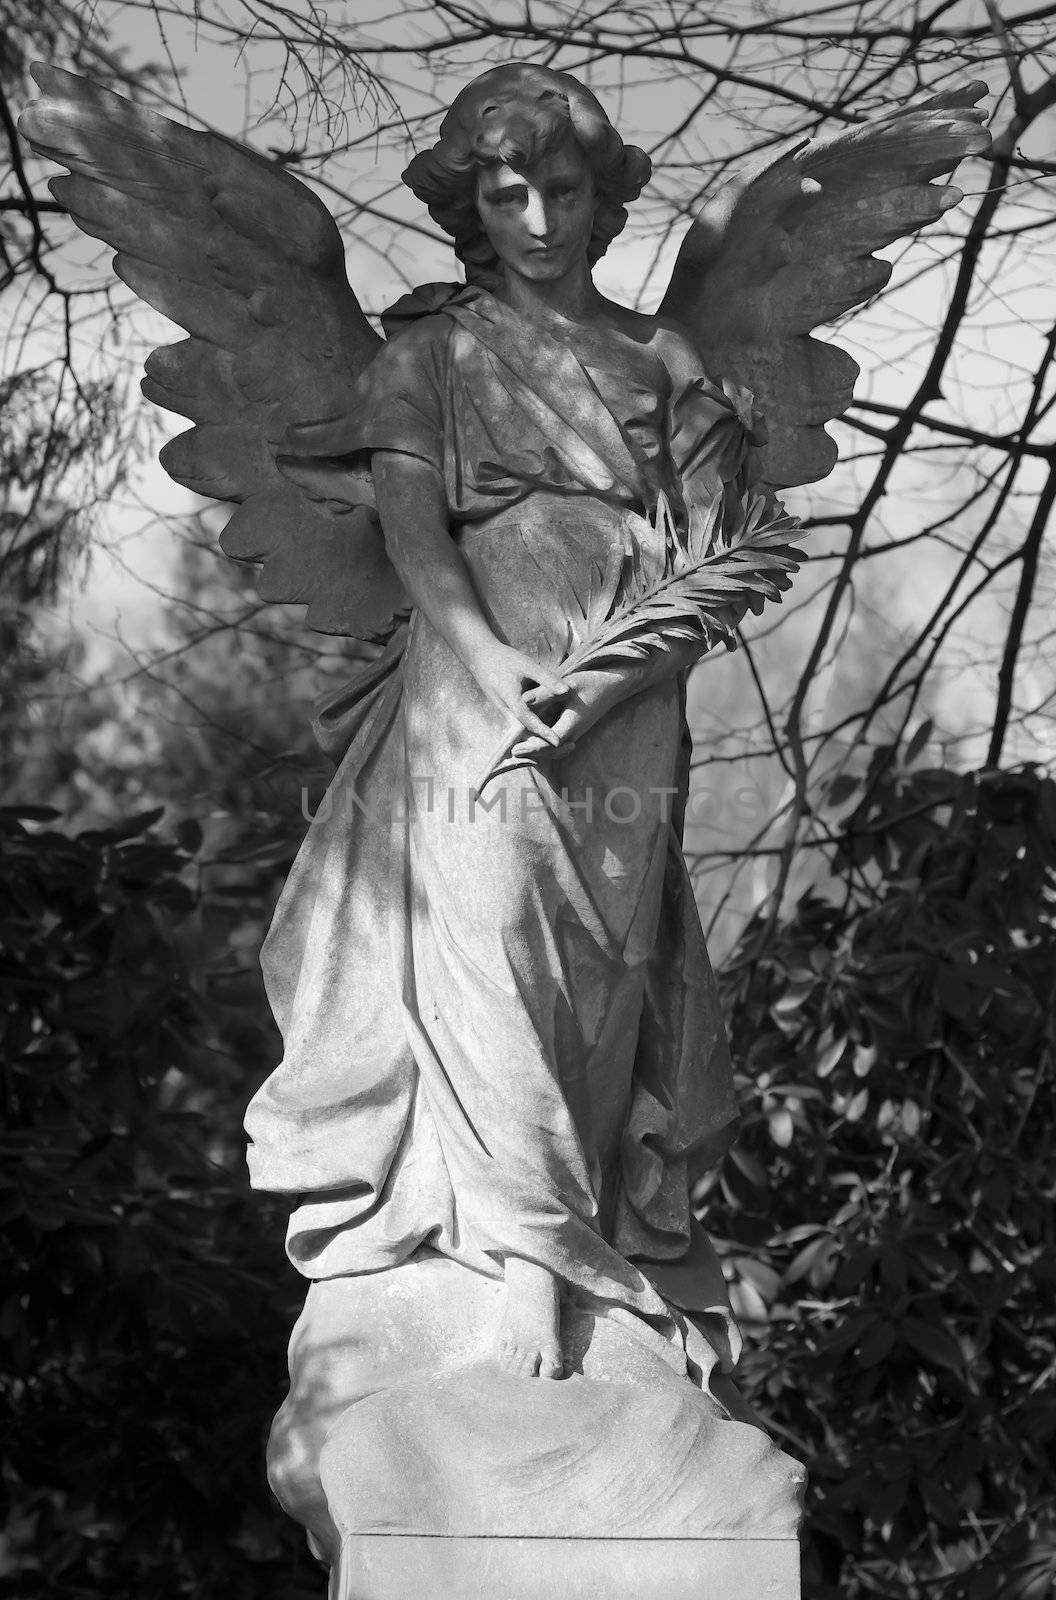 Angel statue in B/W